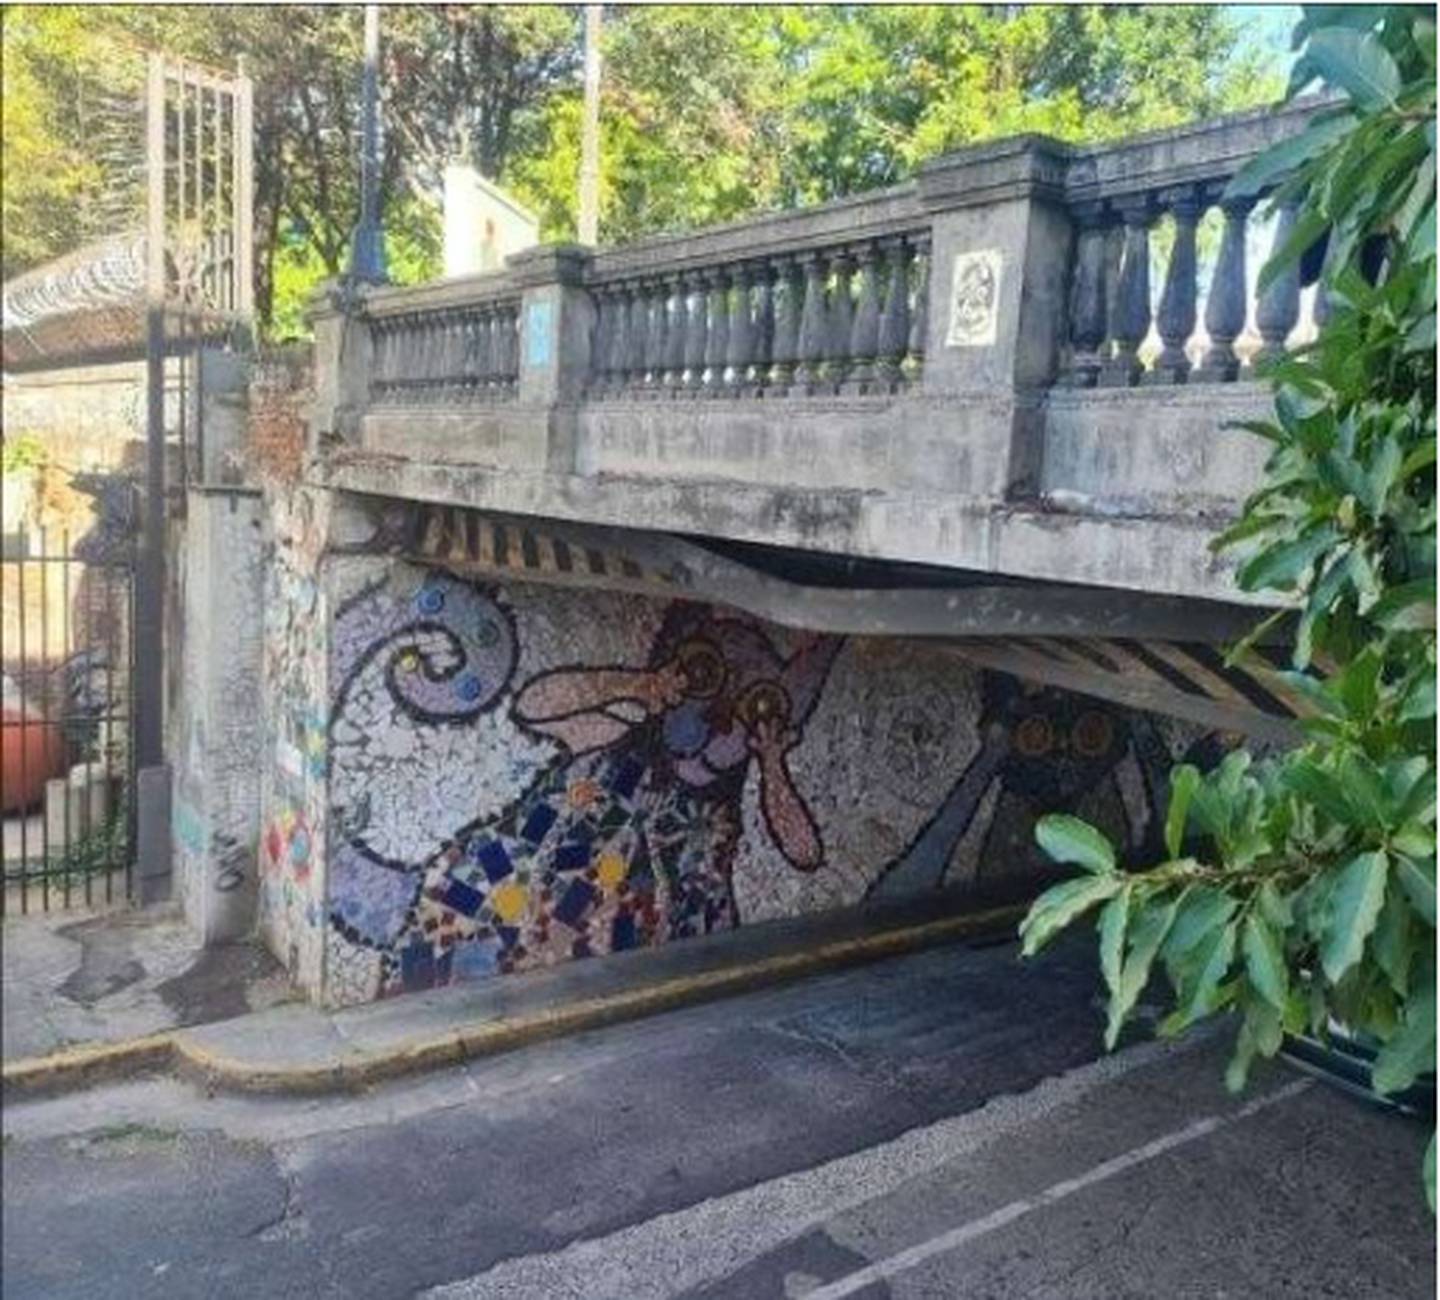 El paso para vehículos por debajo del puente en el Paseo de Las Damas está cerrado hasta nuevo aviso, según confirma el Consejo Nacional de Vialidad (Conavi).